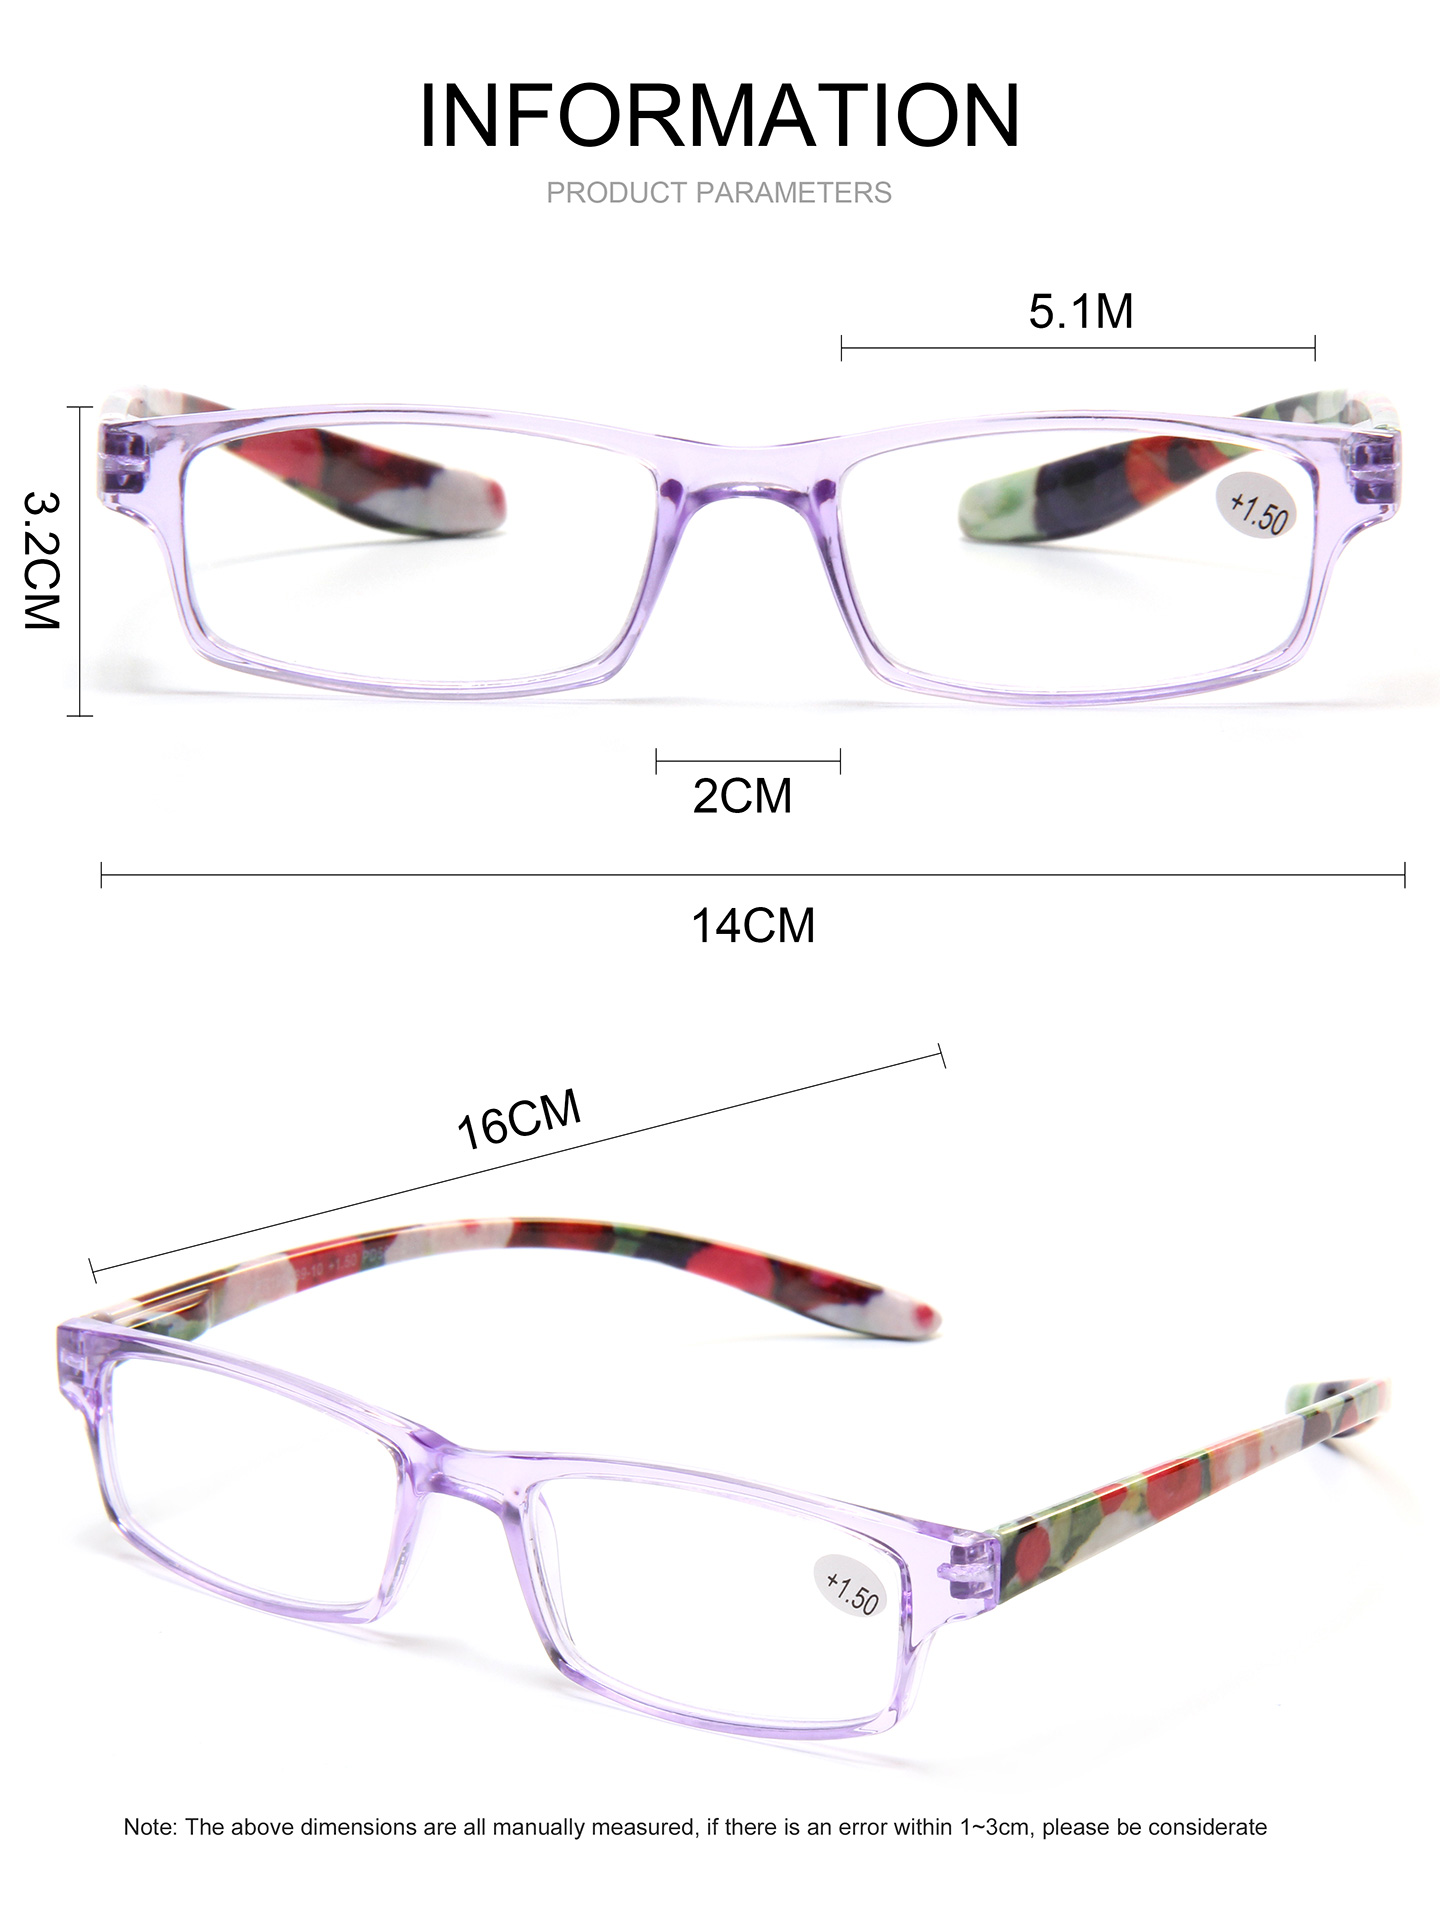 best value reading glasses for women national standard for women-2